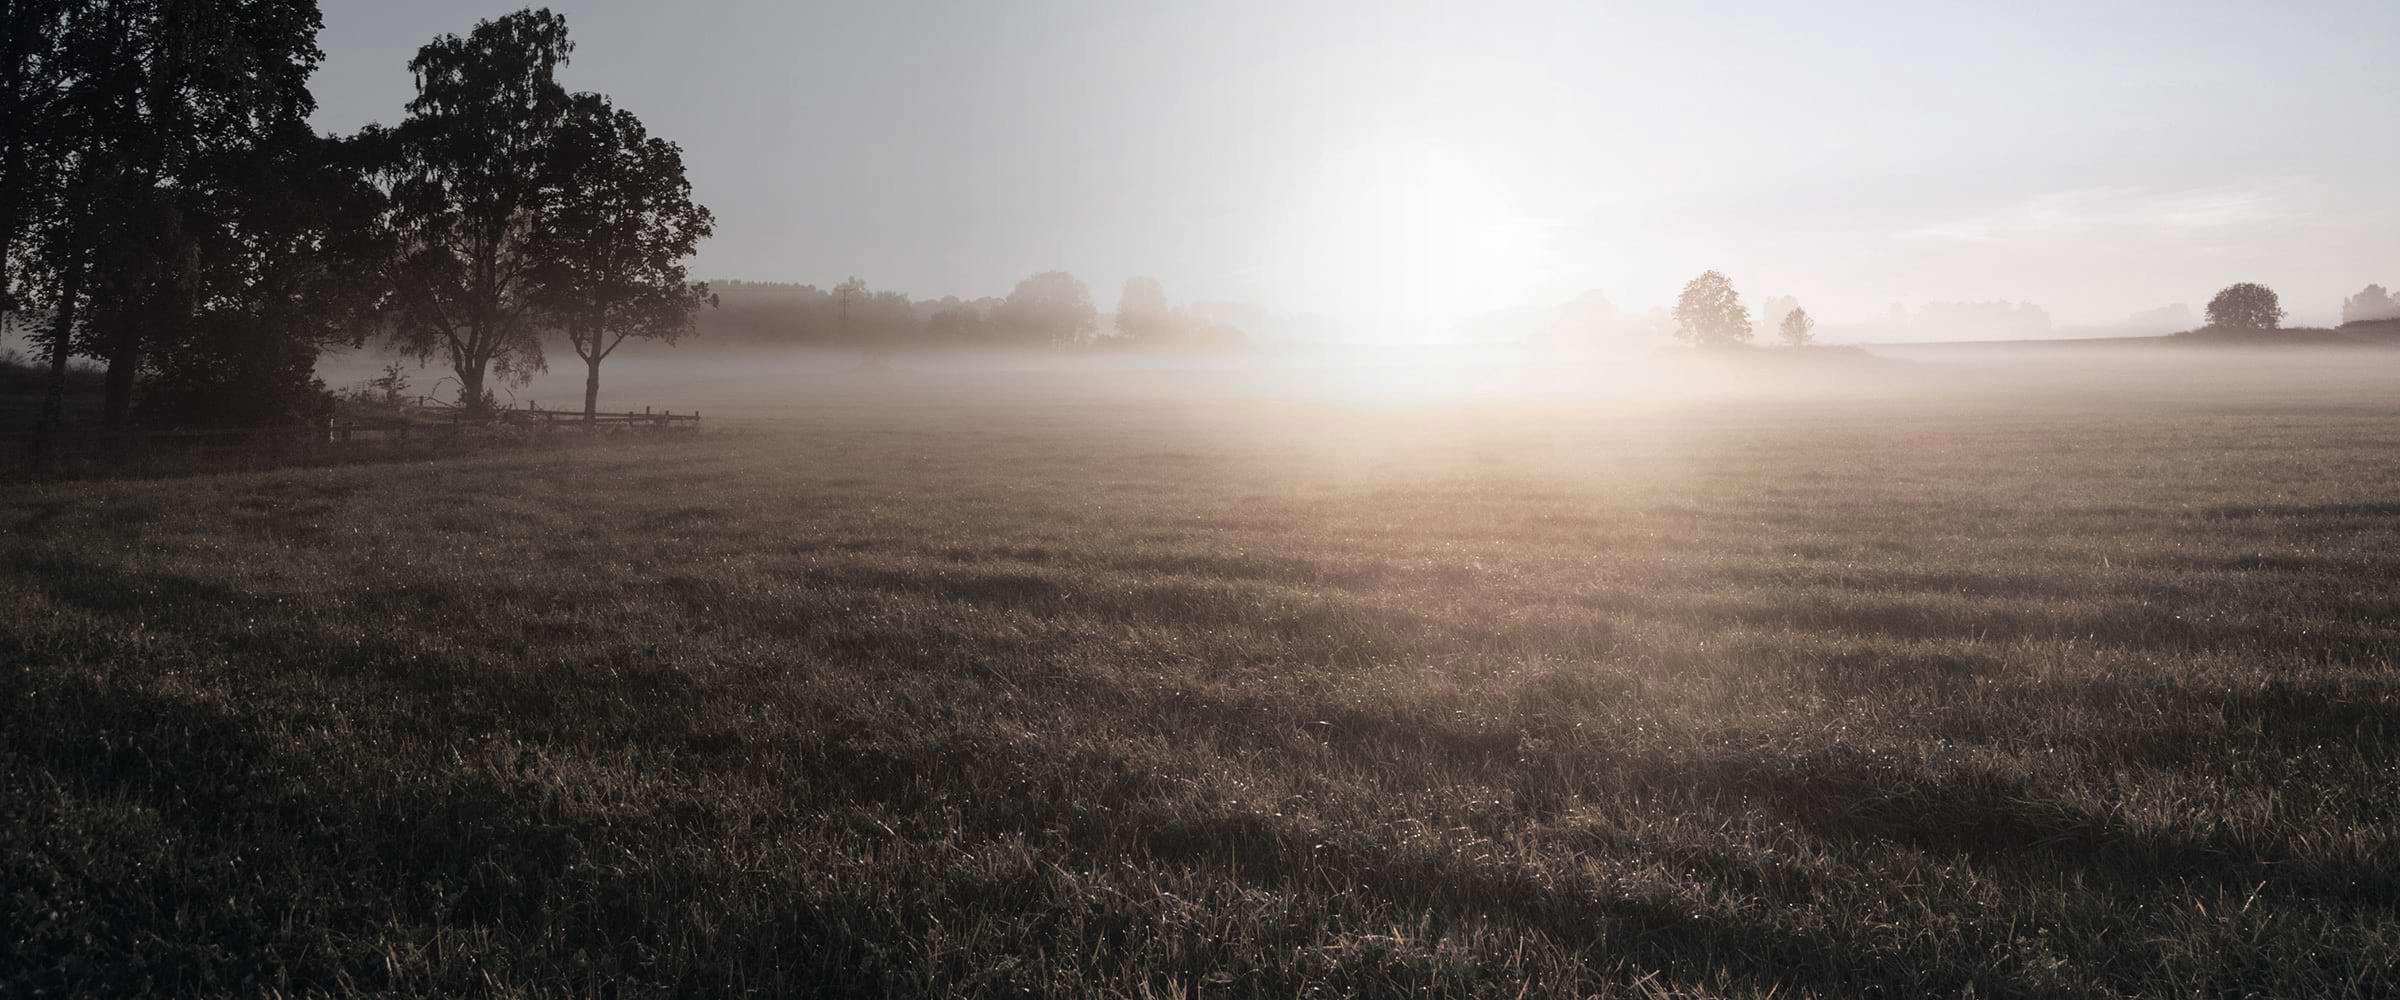 A misty open field